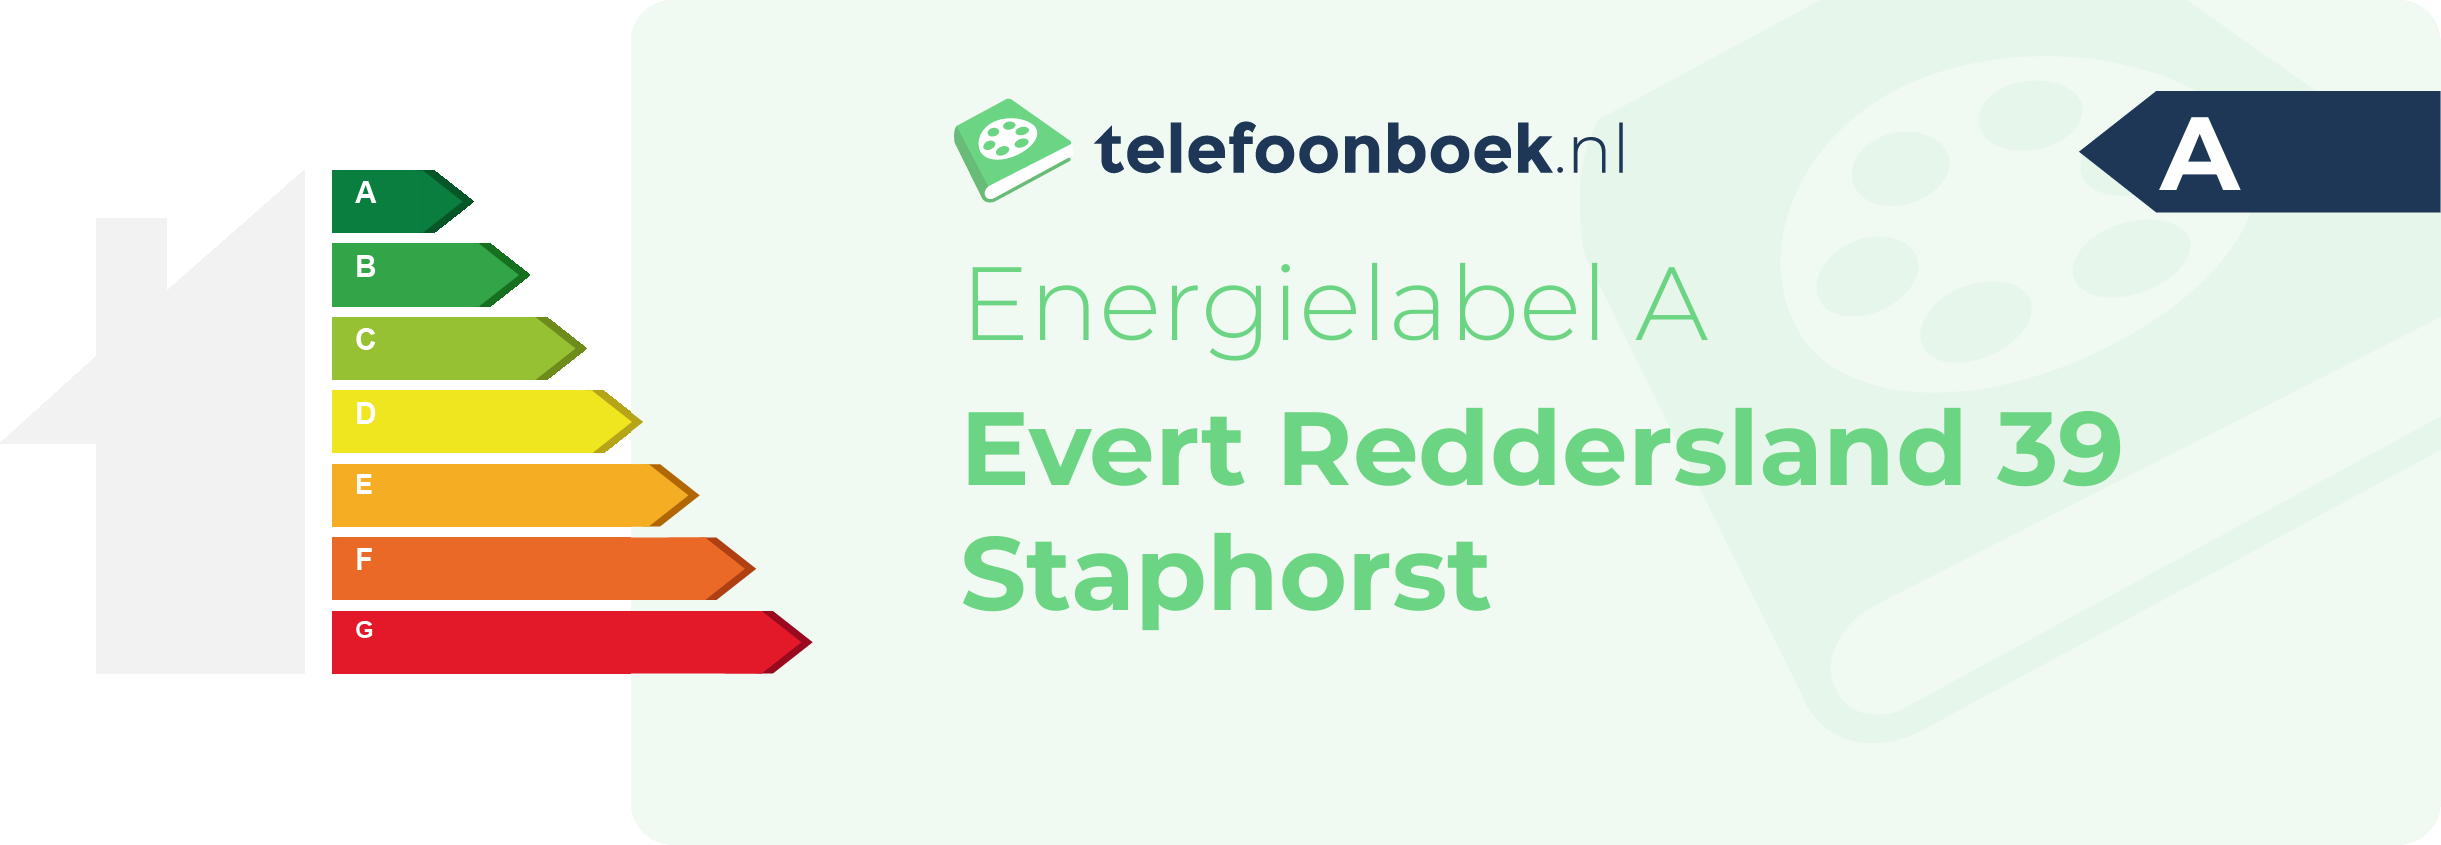 Energielabel Evert Reddersland 39 Staphorst